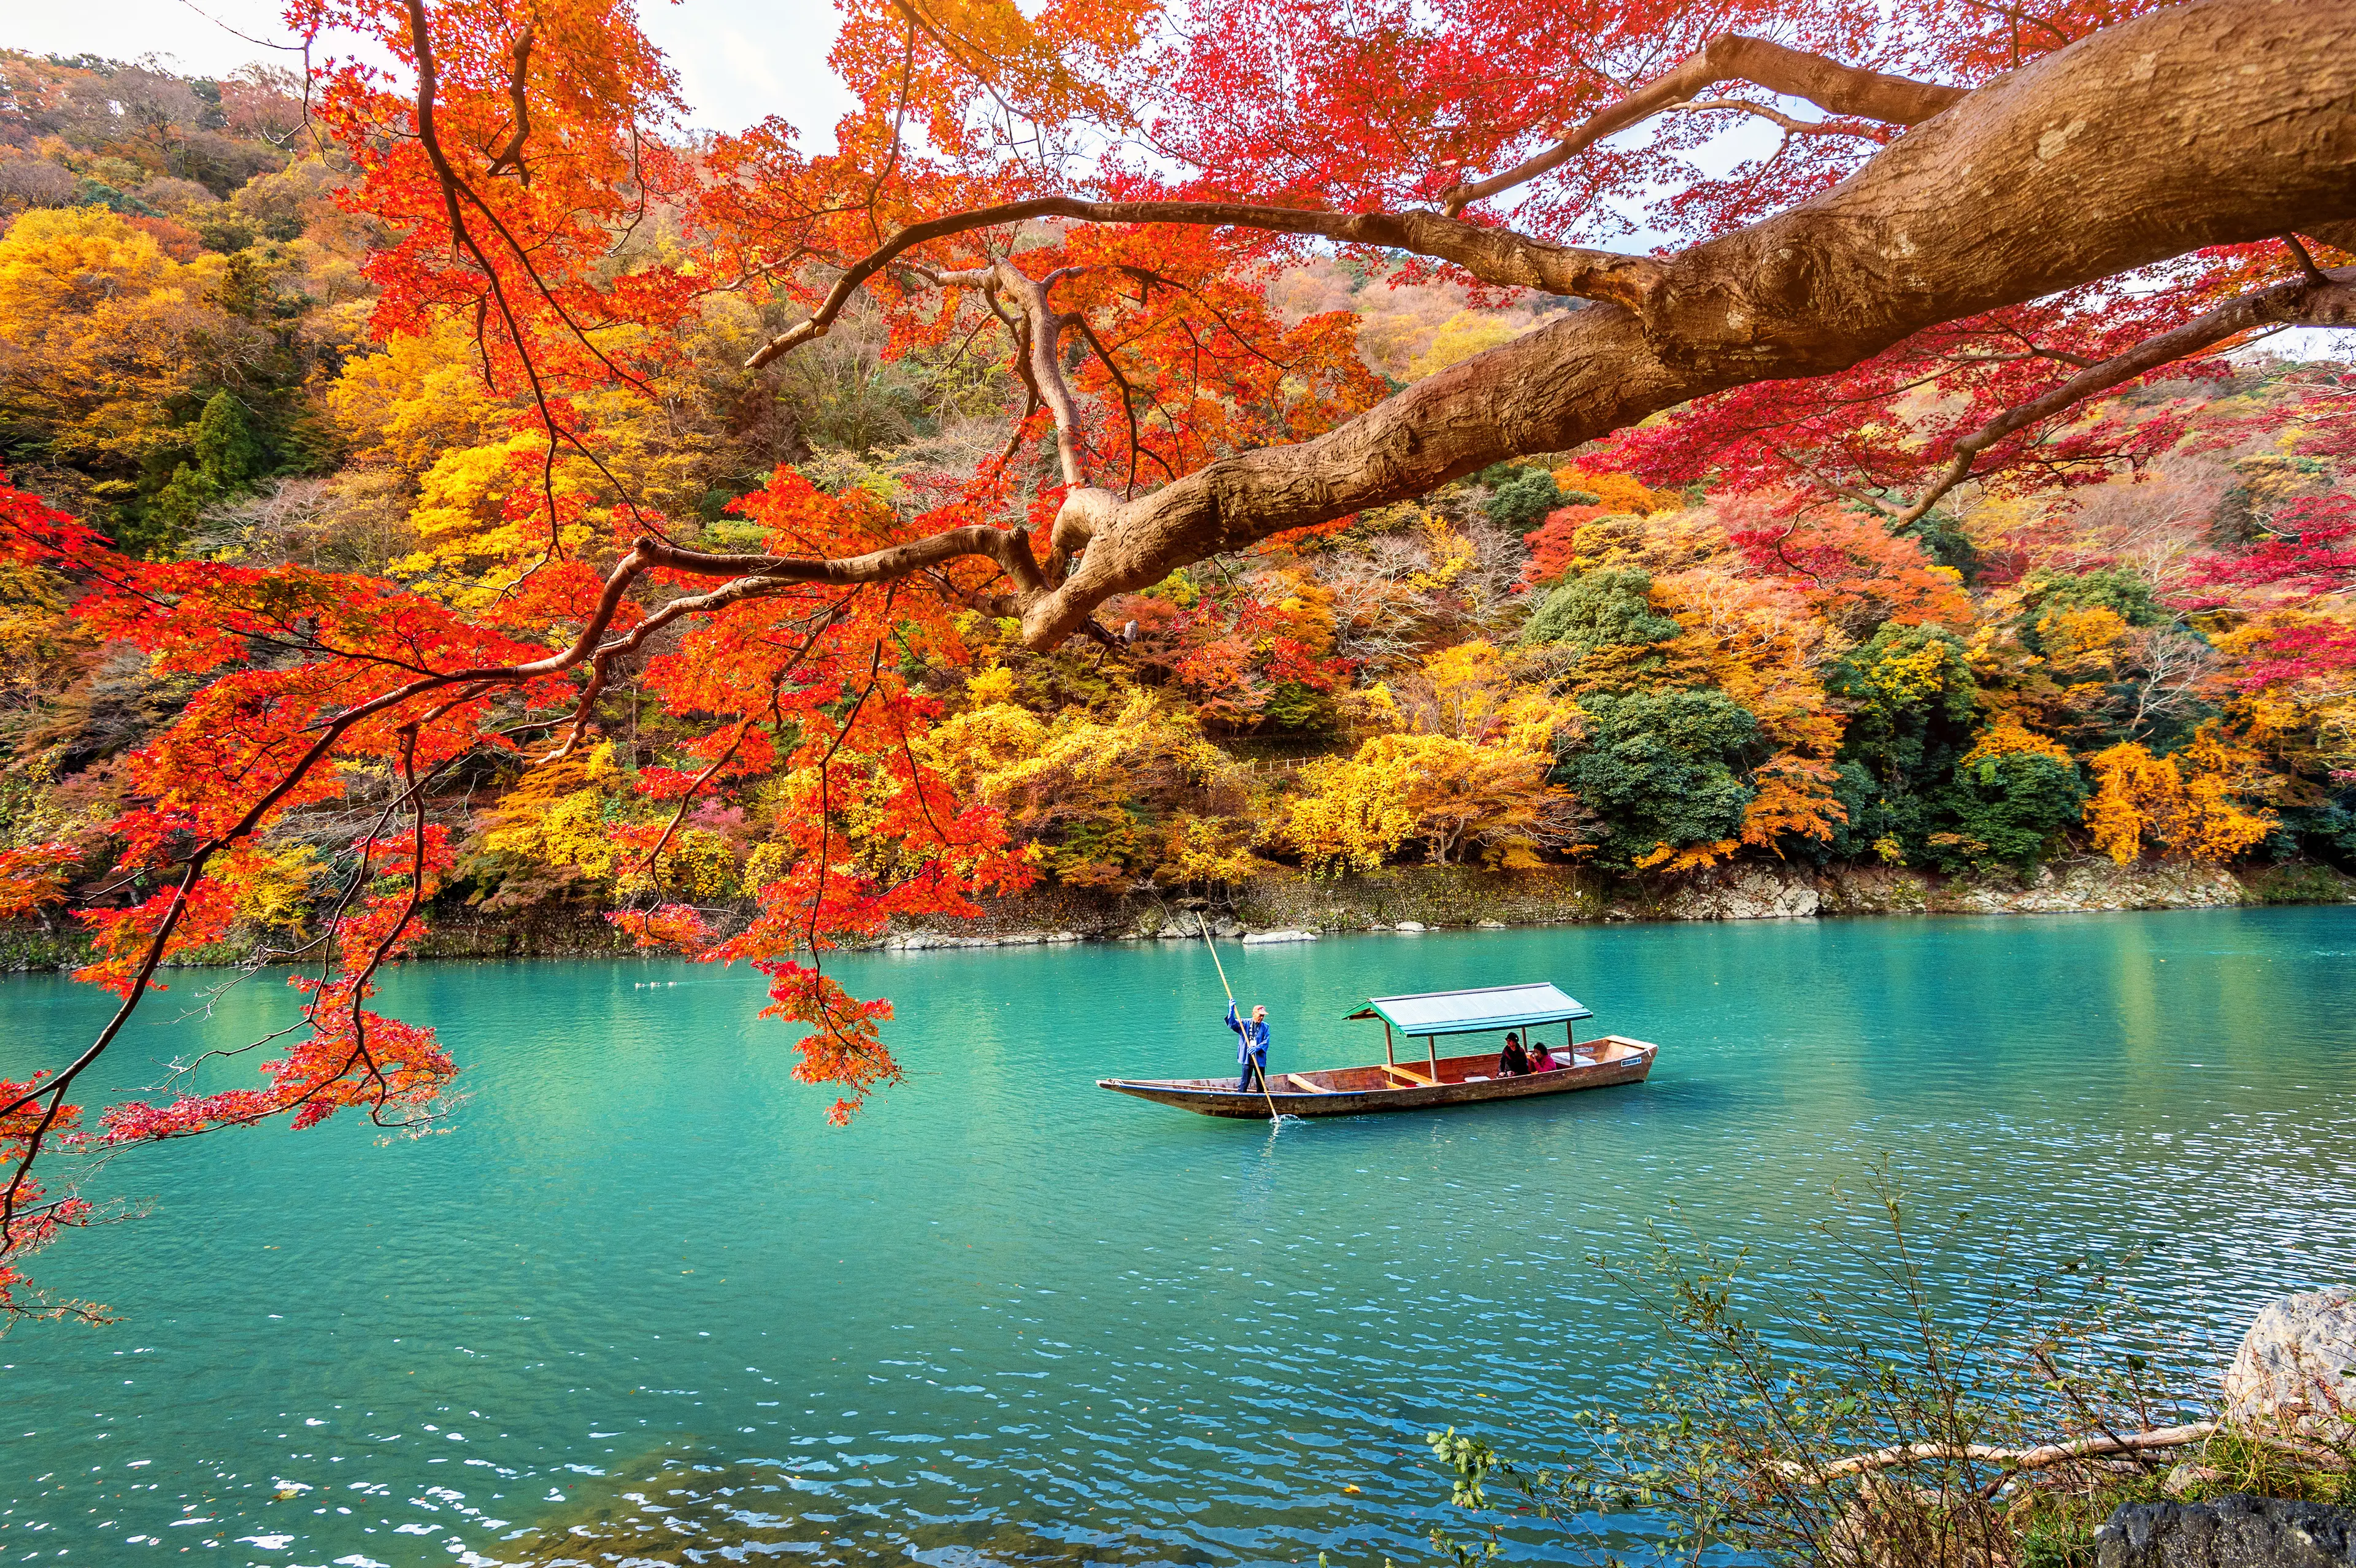 Arashiyama in autumn season along the river